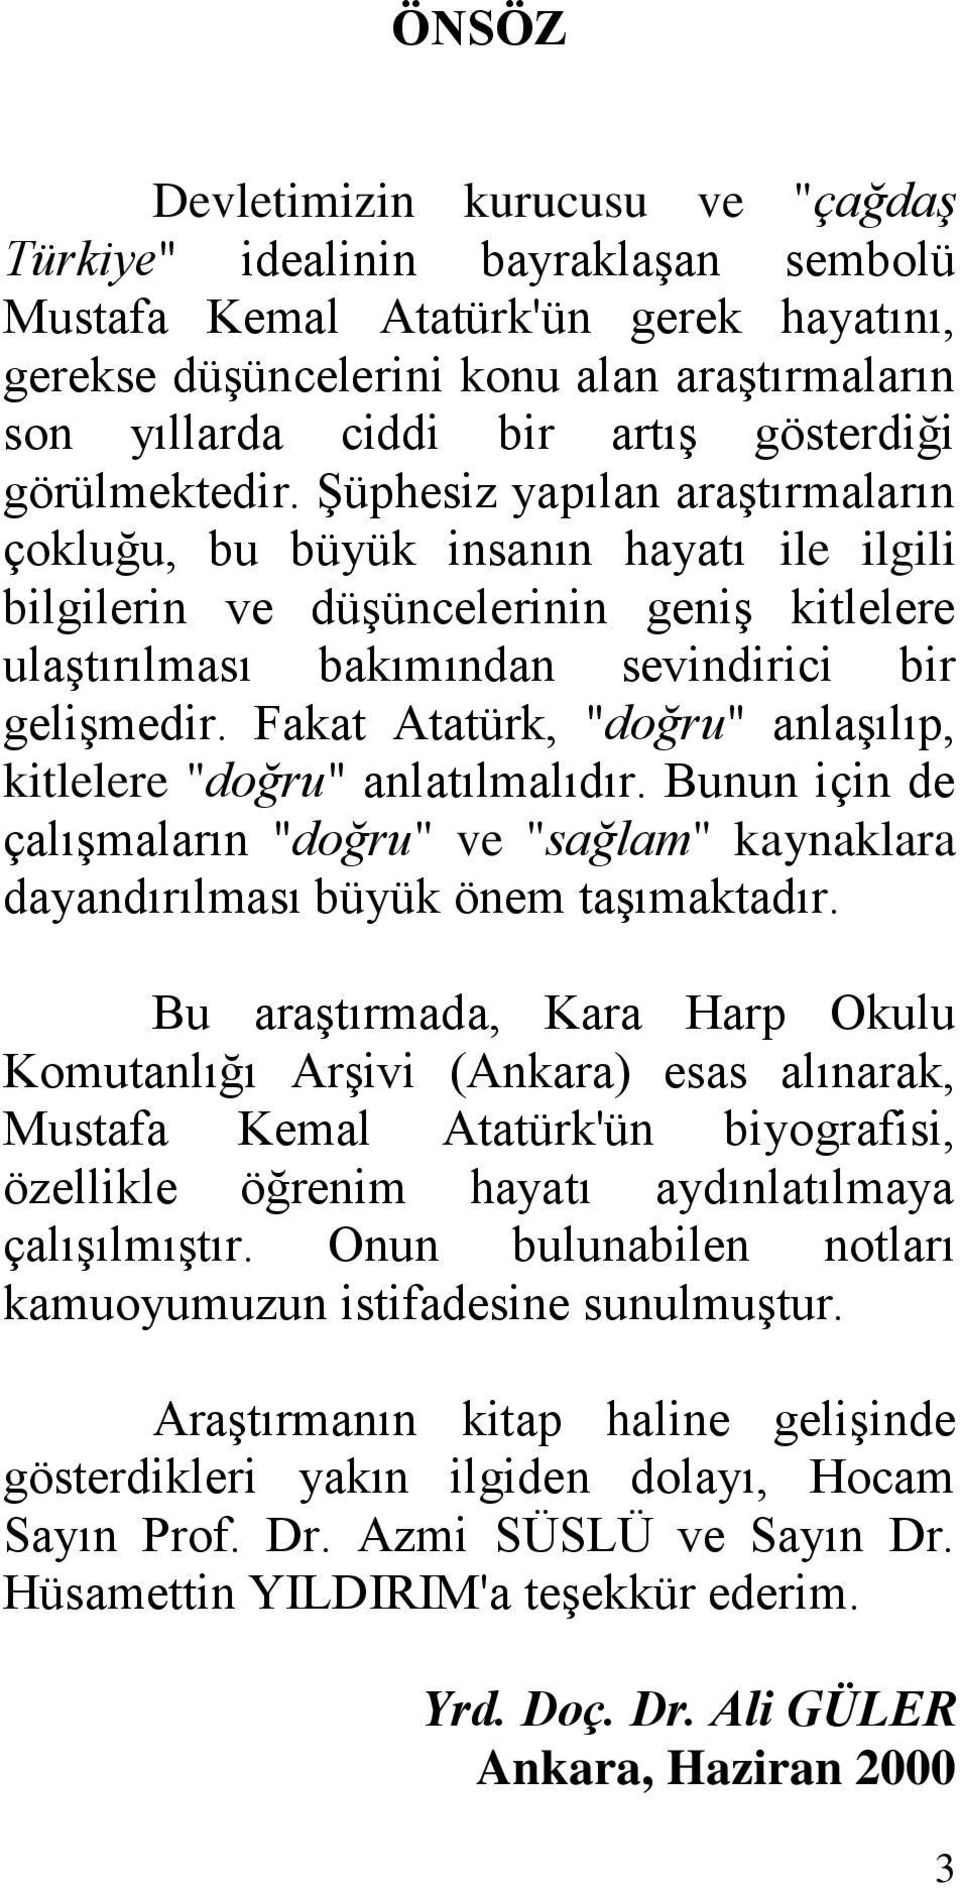 Fakat Atatürk, "doğru" anlaģılıp, kitlelere "doğru" anlatılmalıdır. Bunun için de çalıģmaların "doğru" ve "sağlam" kaynaklara dayandırılması büyük önem taģımaktadır.